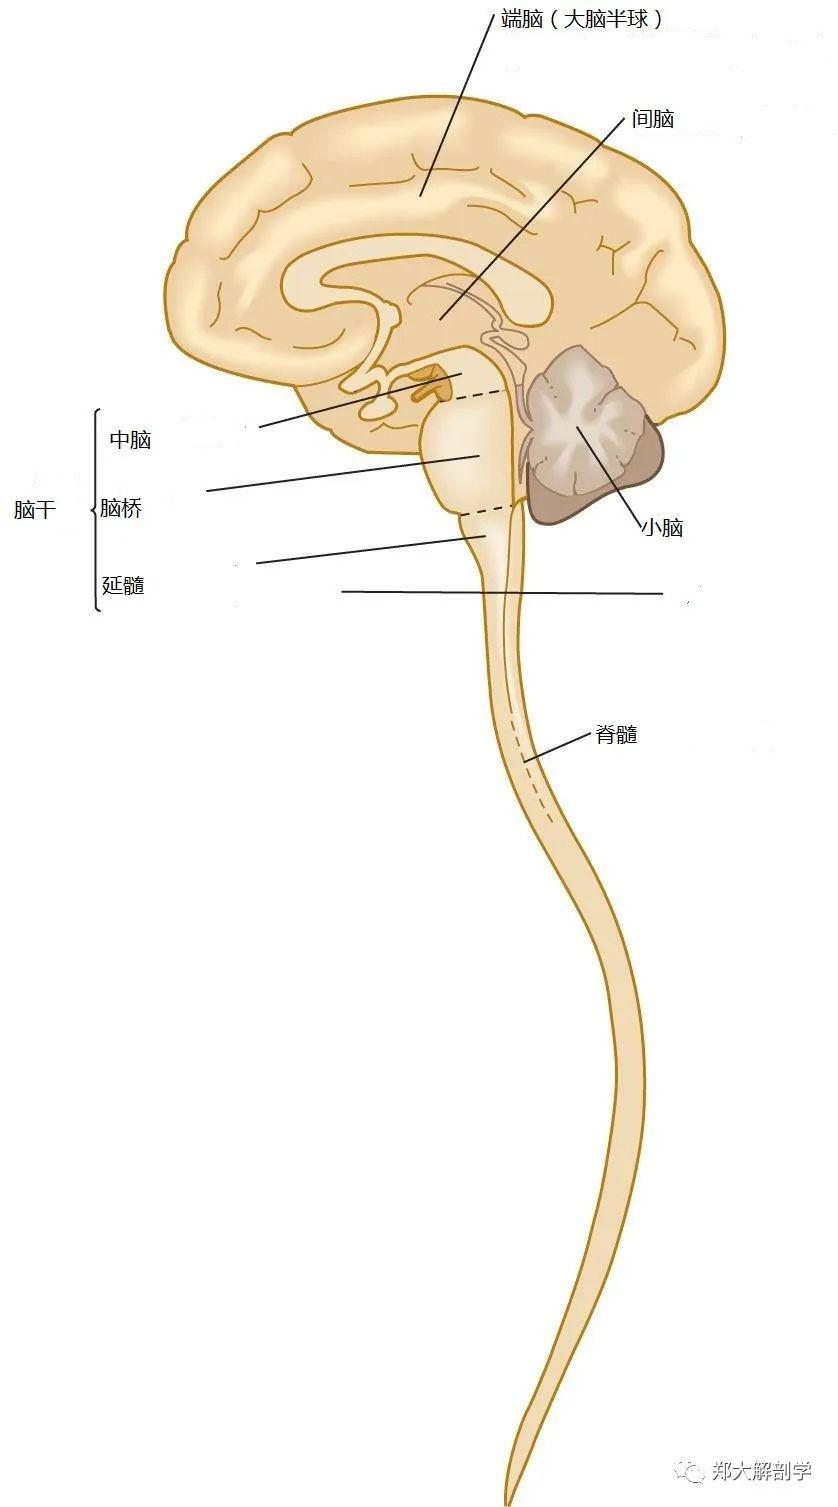 中枢神经系统包括脑和细长的脊髓